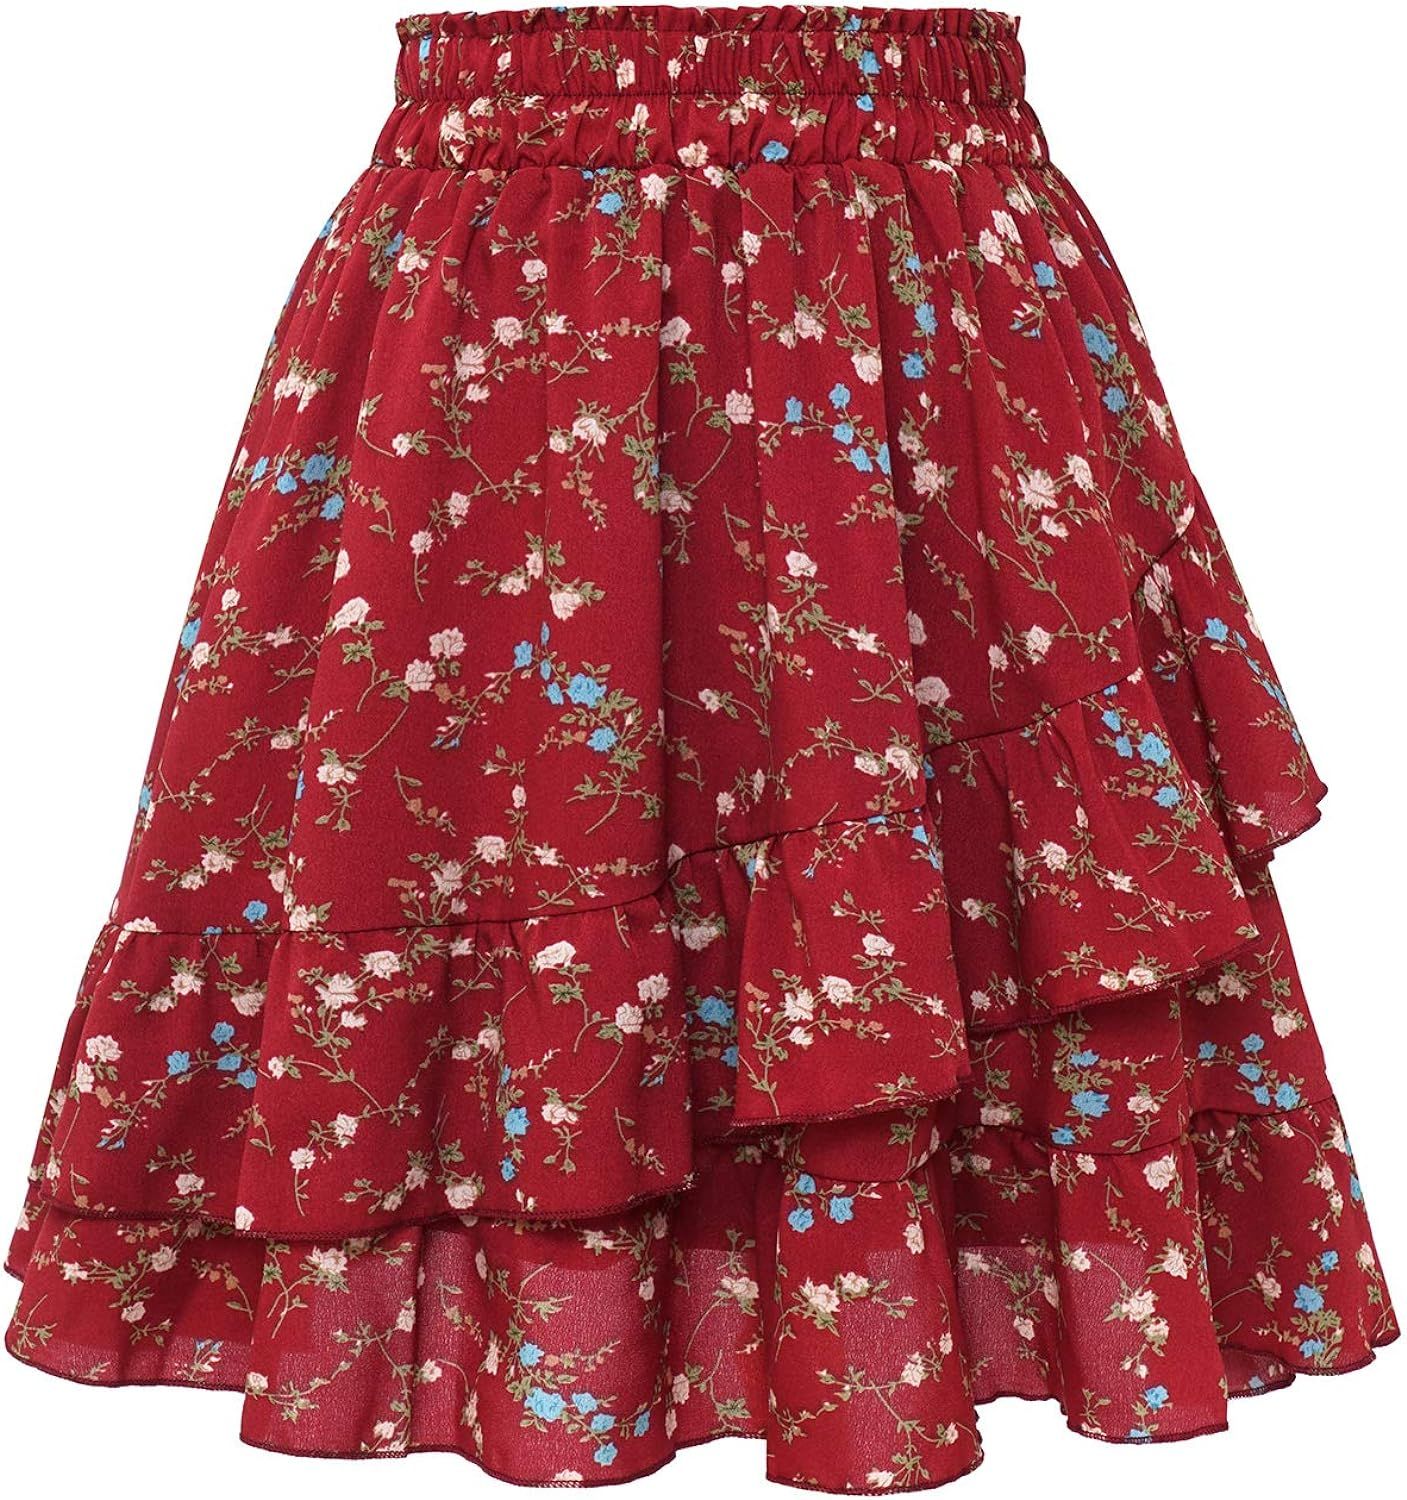 Bbonlinedress Women's Floral Mini Summer Skirt High Waist Ruffle Boho Flared Skater Skirts | Amazon (US)